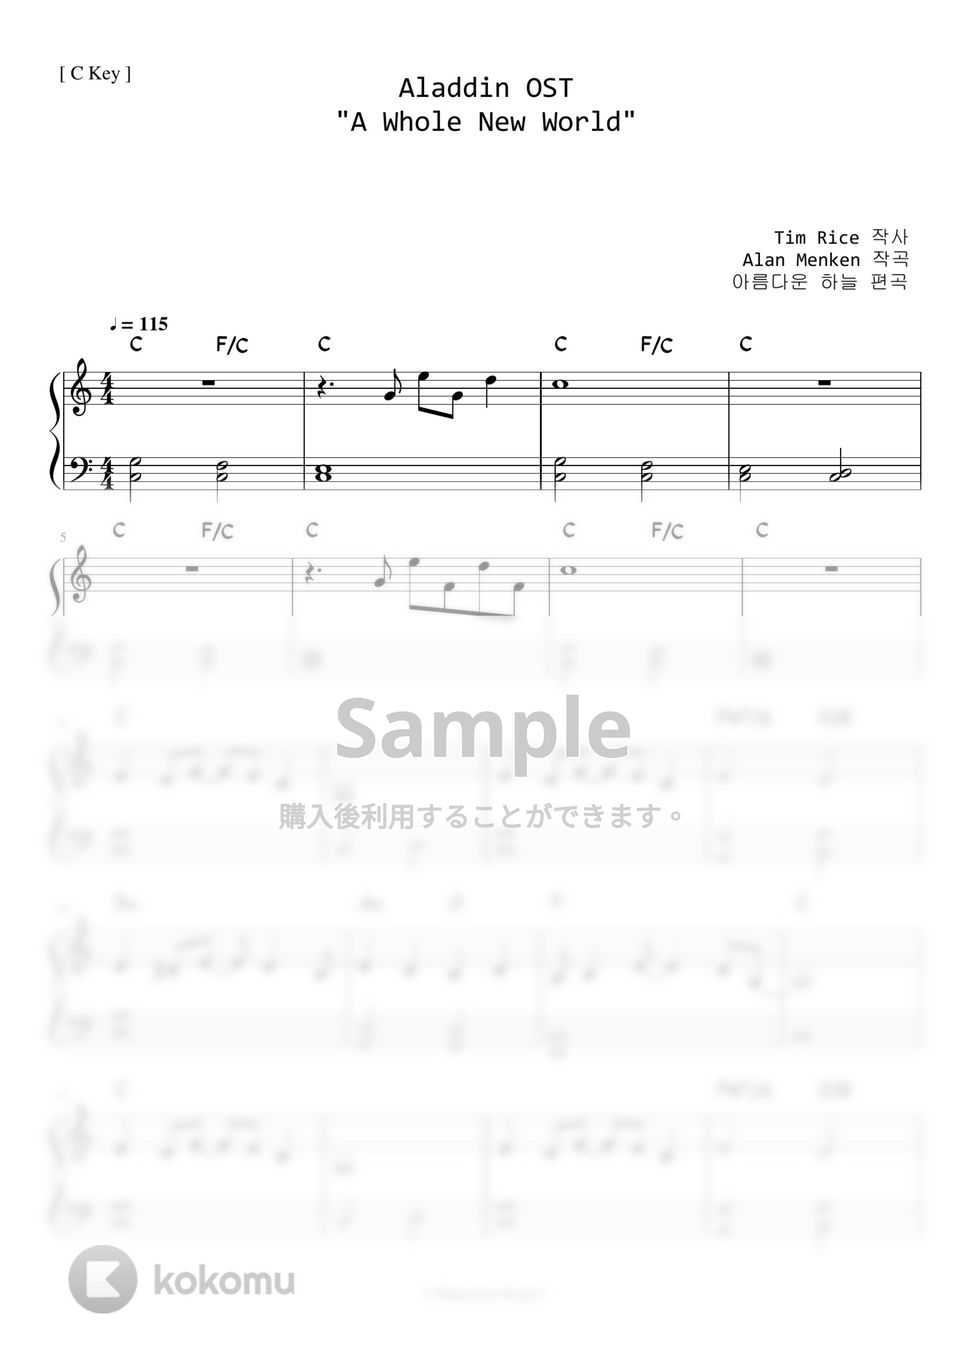 アラジン - ホールニューワールド (Level 1 - 初級レベル) by A.Ha